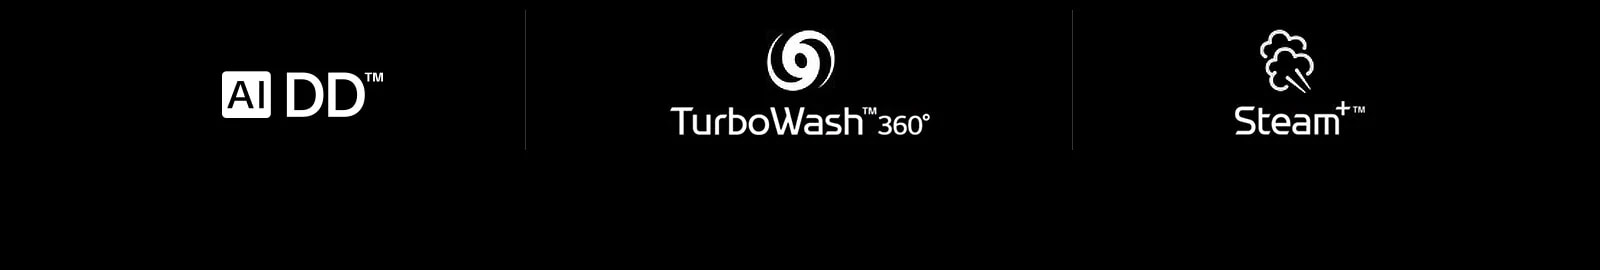 صف بأربع أيقونات LG لـ: علامة AI DD. علامة TurboWash 360. علامة Steam.